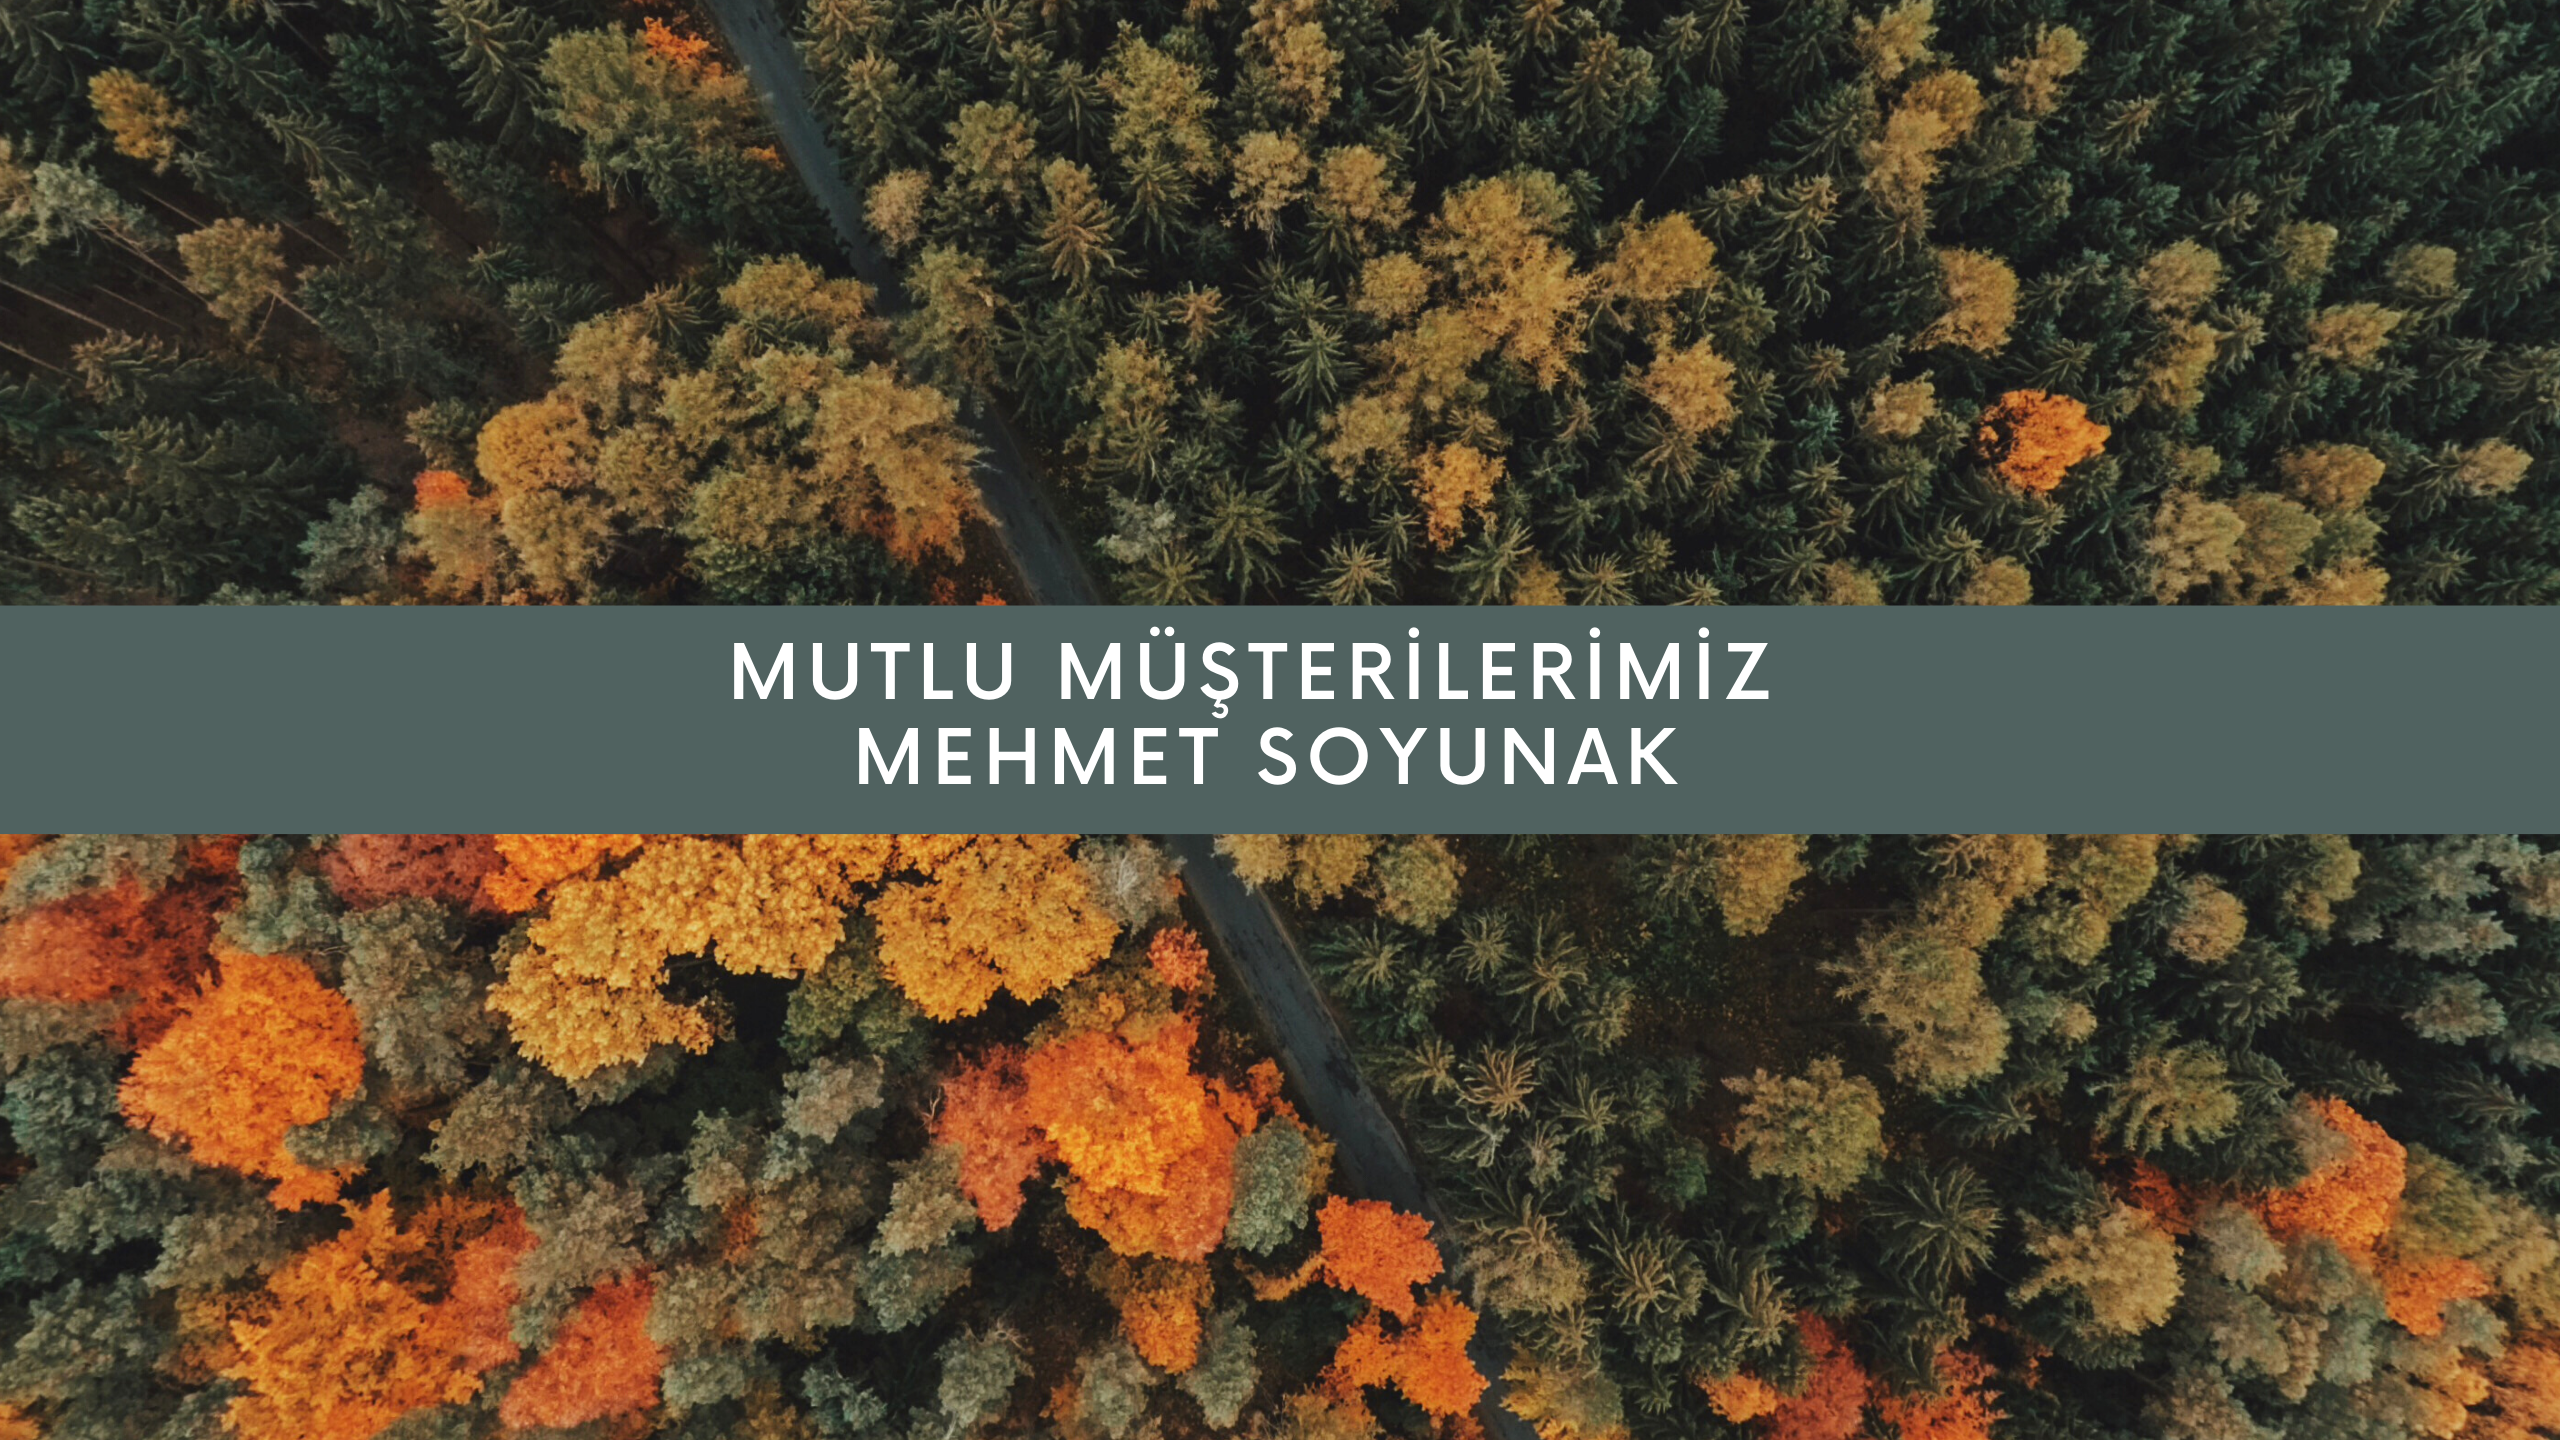 Mutlu Müşterilerimiz / Mehmet Soyunak